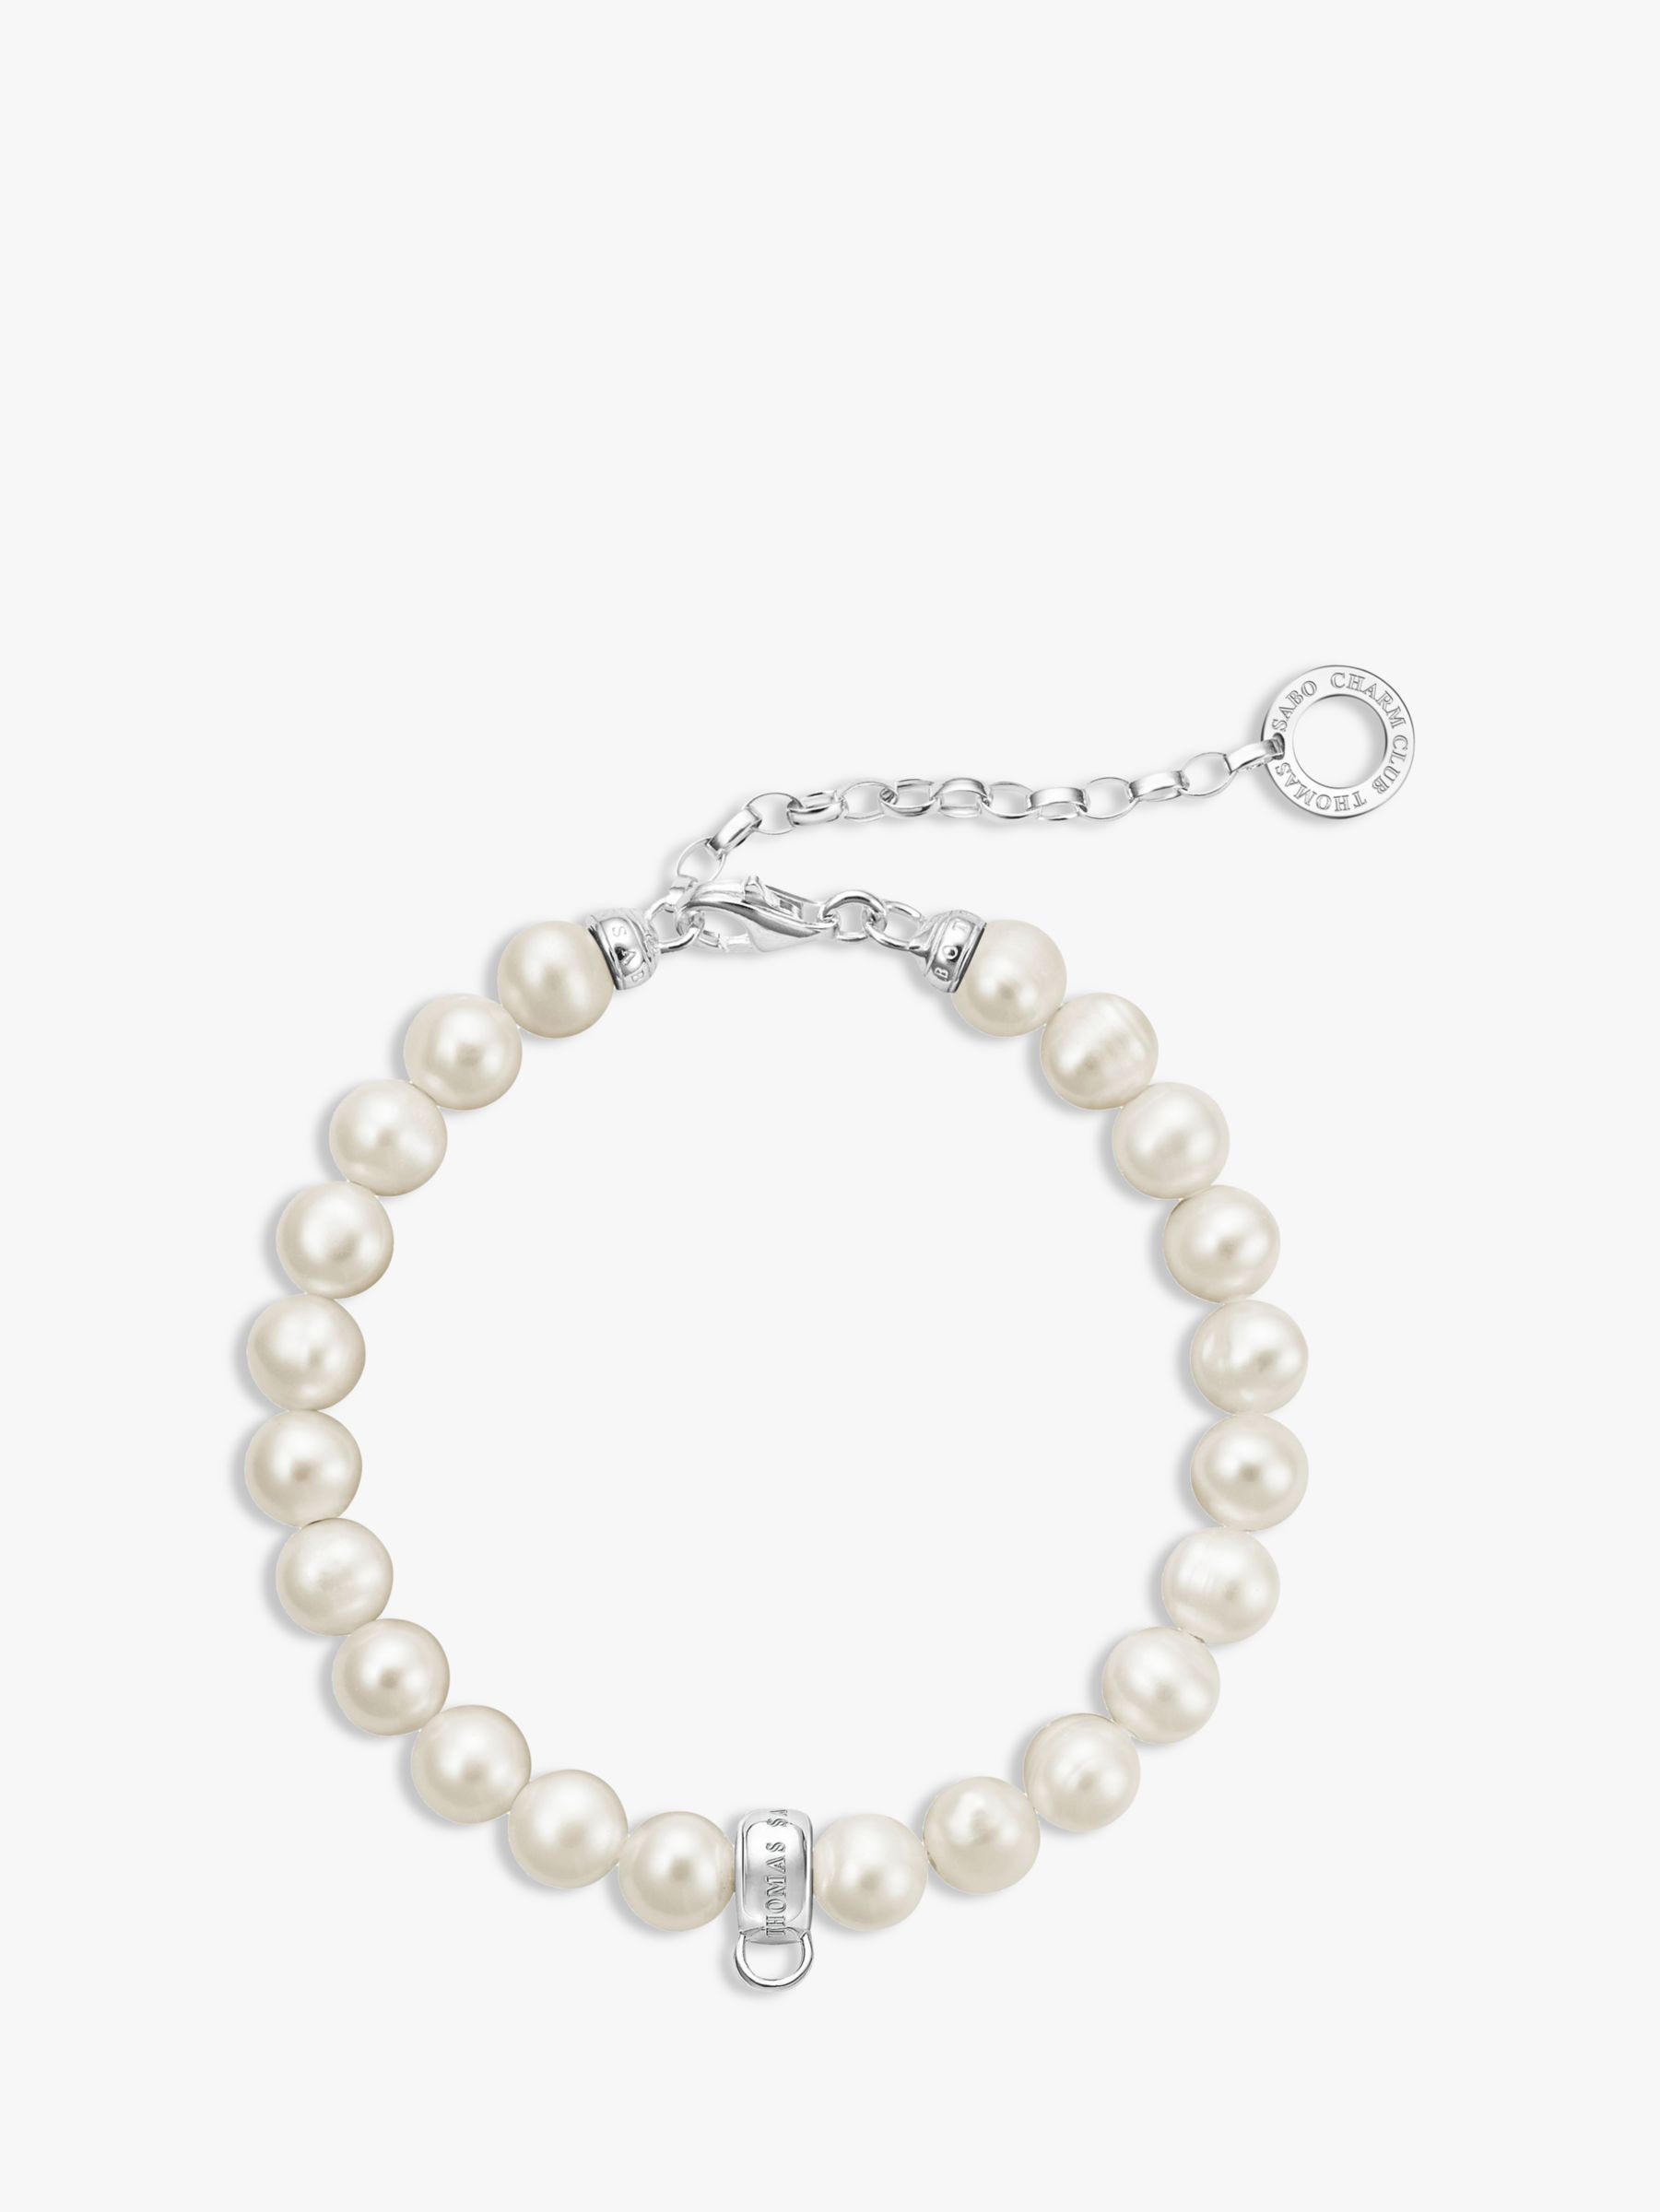 THOMAS SABO Freshwater Pearl Charm Bracelet, White